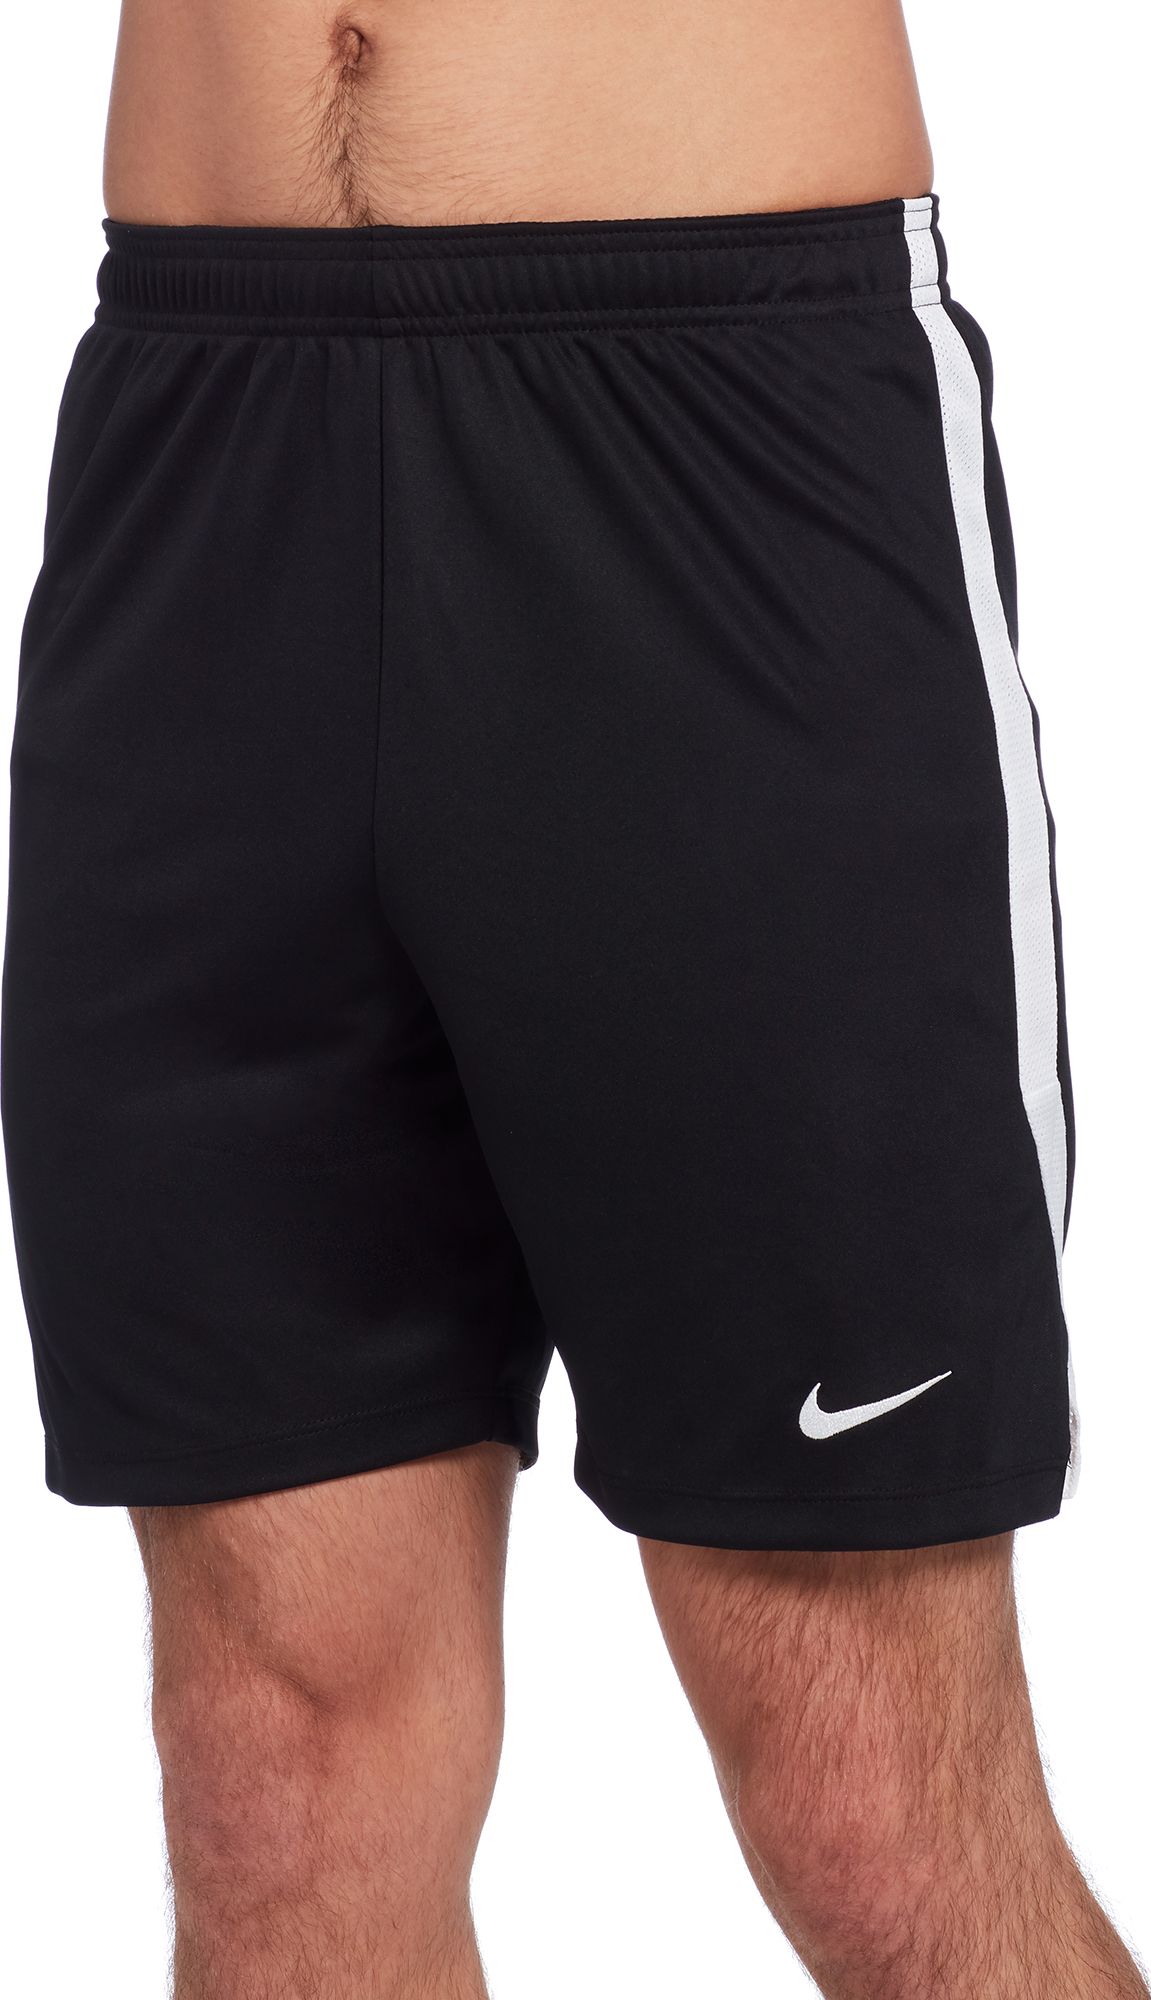 nike black soccer shorts